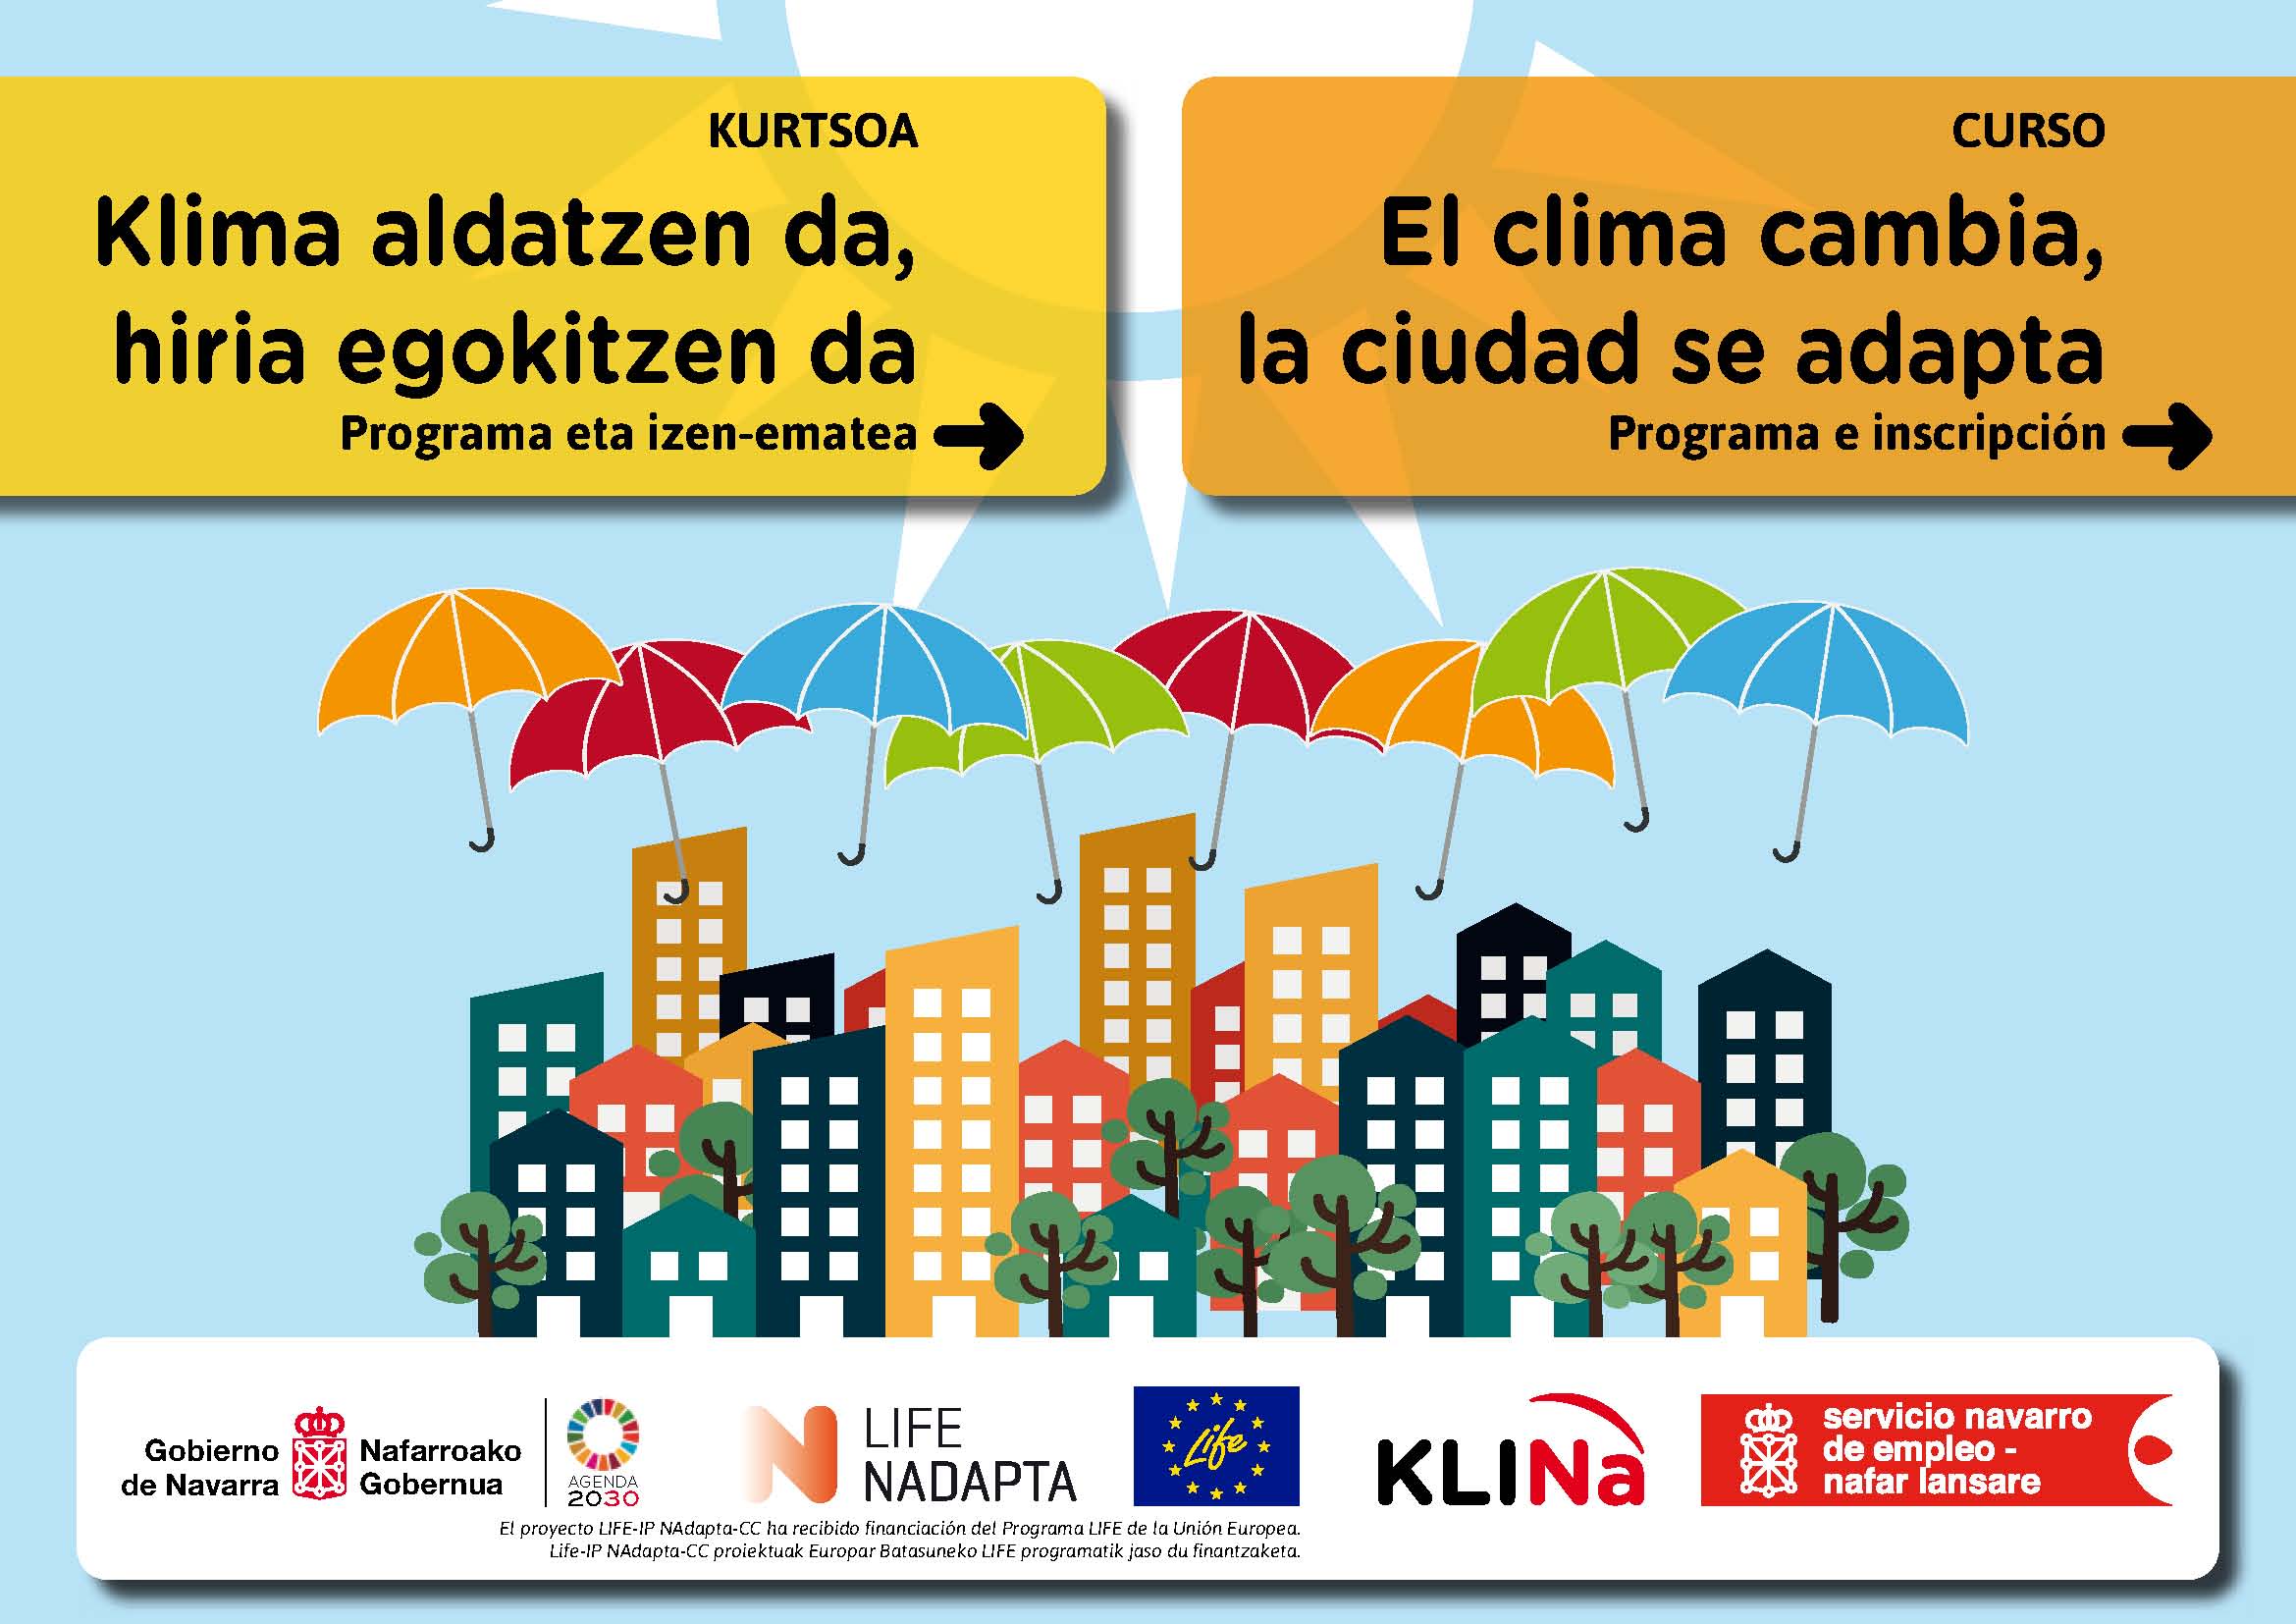 Fotografía del cartel promocional del curso, donde aparecen edificios, árboles y paraguas de colores